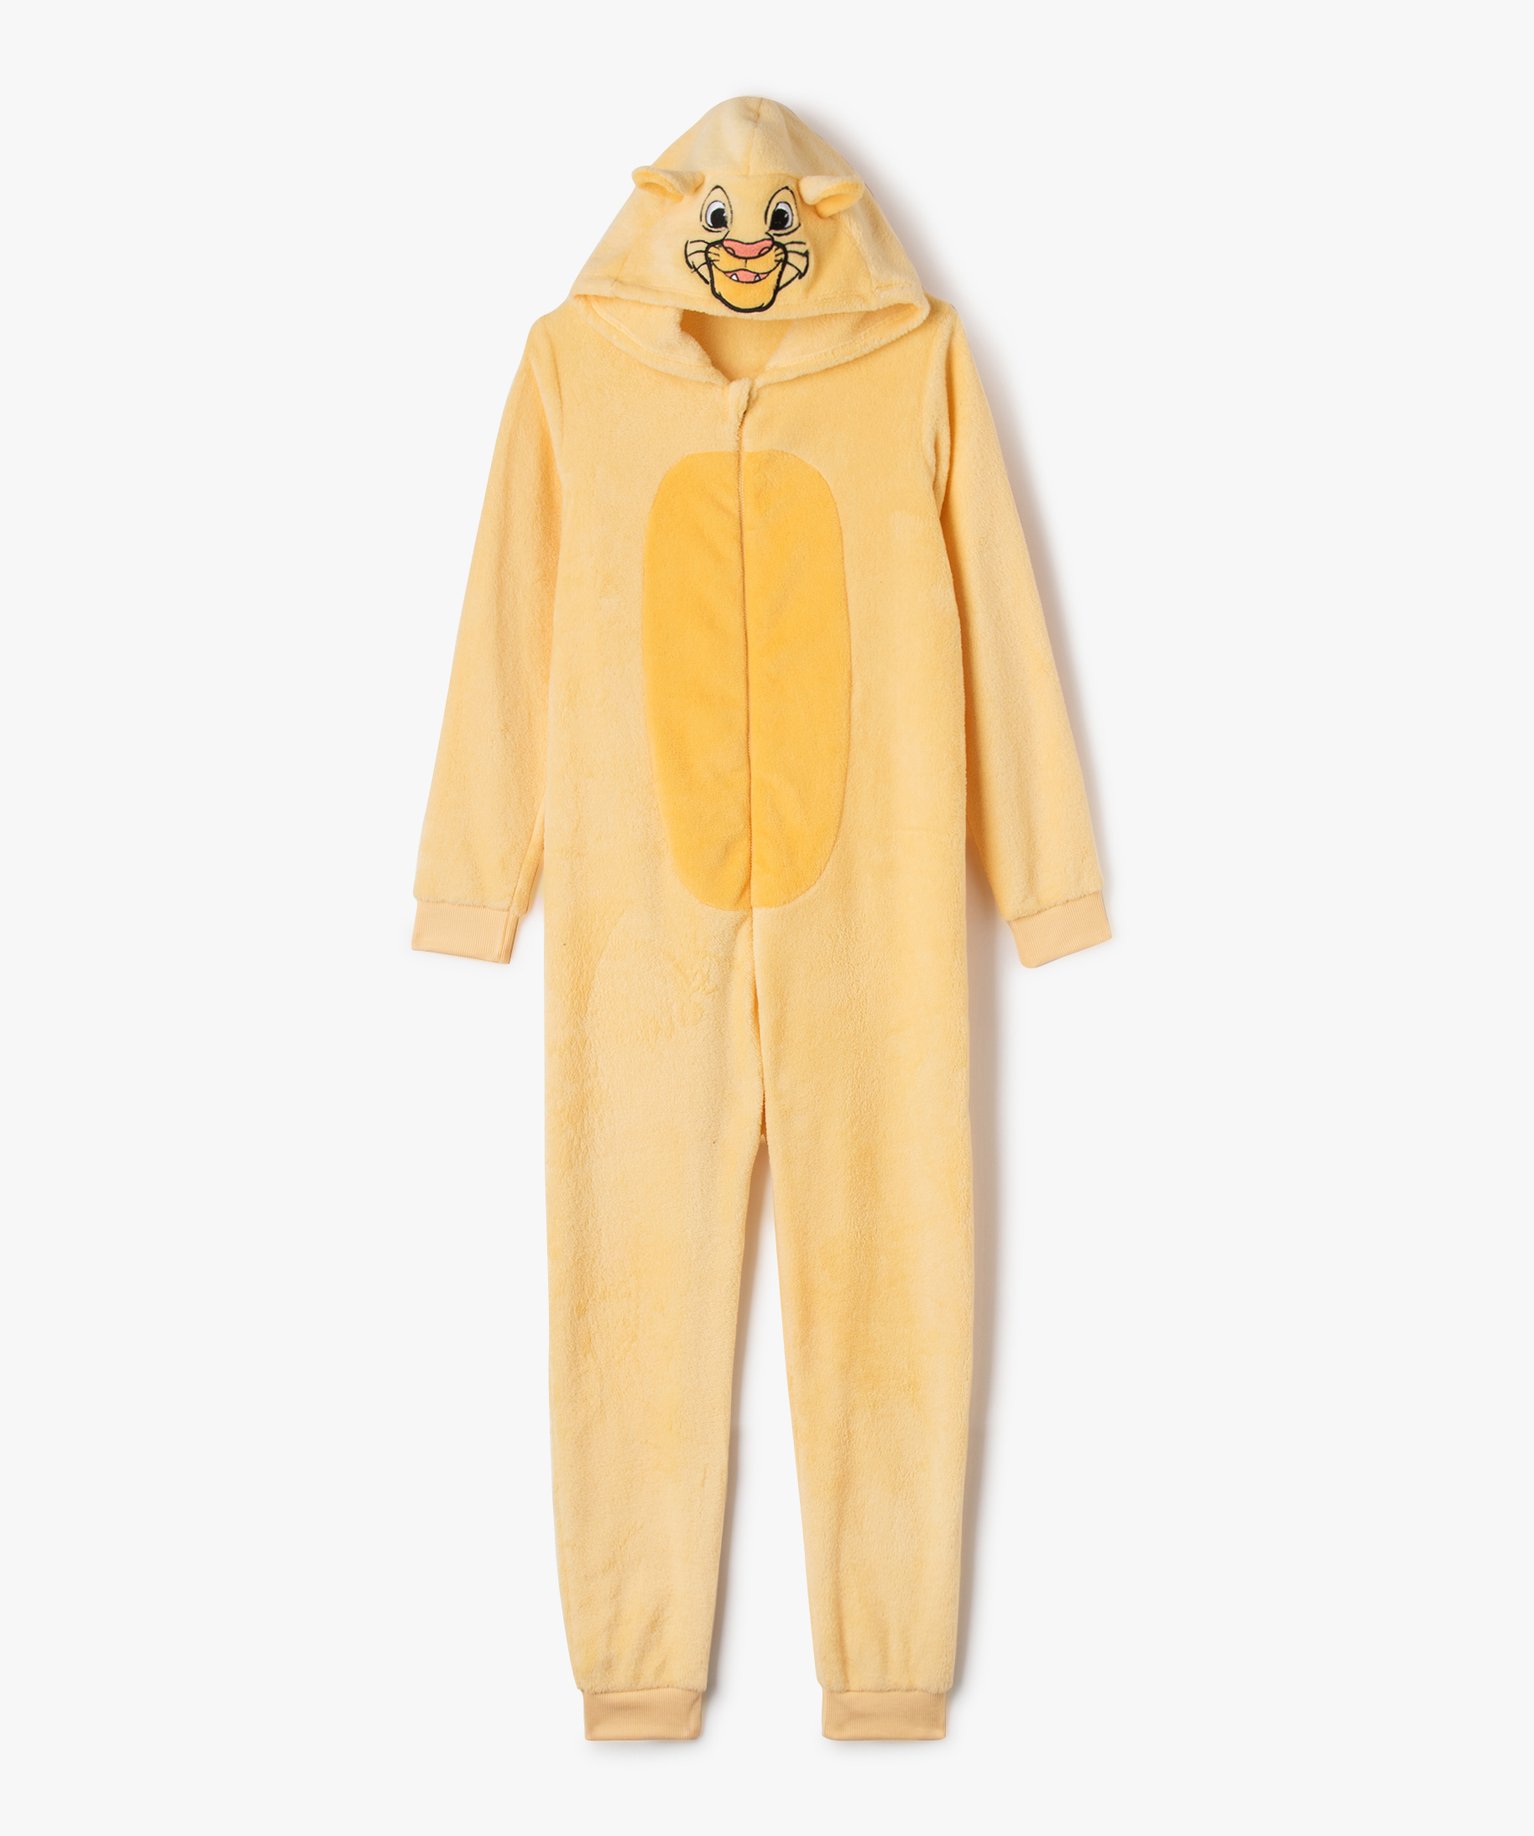 Combinaison pyjama en velours Le roi Lion garçon - Disney - 10 - jaune - ROI LION